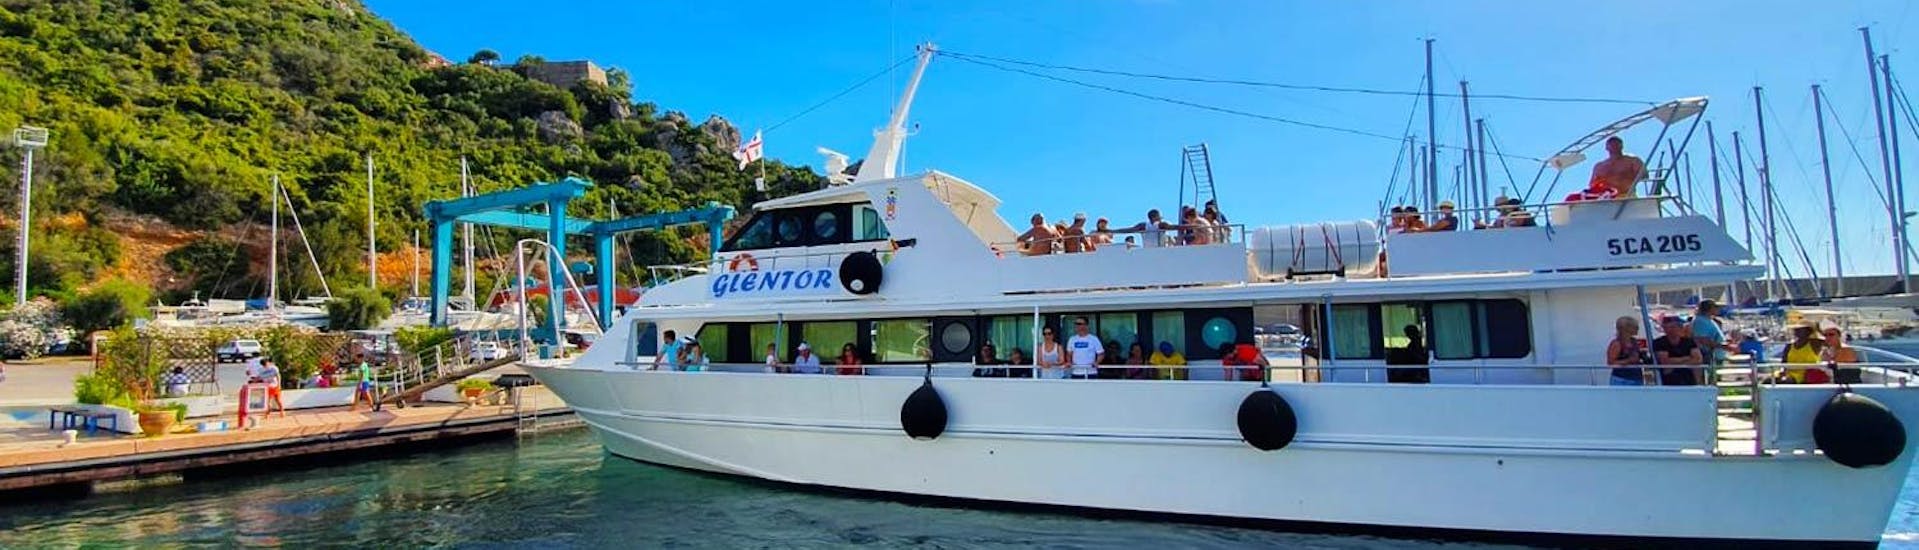 Photo de notre bateau à moteur Glentor lors d'une excursion en bateau avec Glentor Escursioni Arbatax.